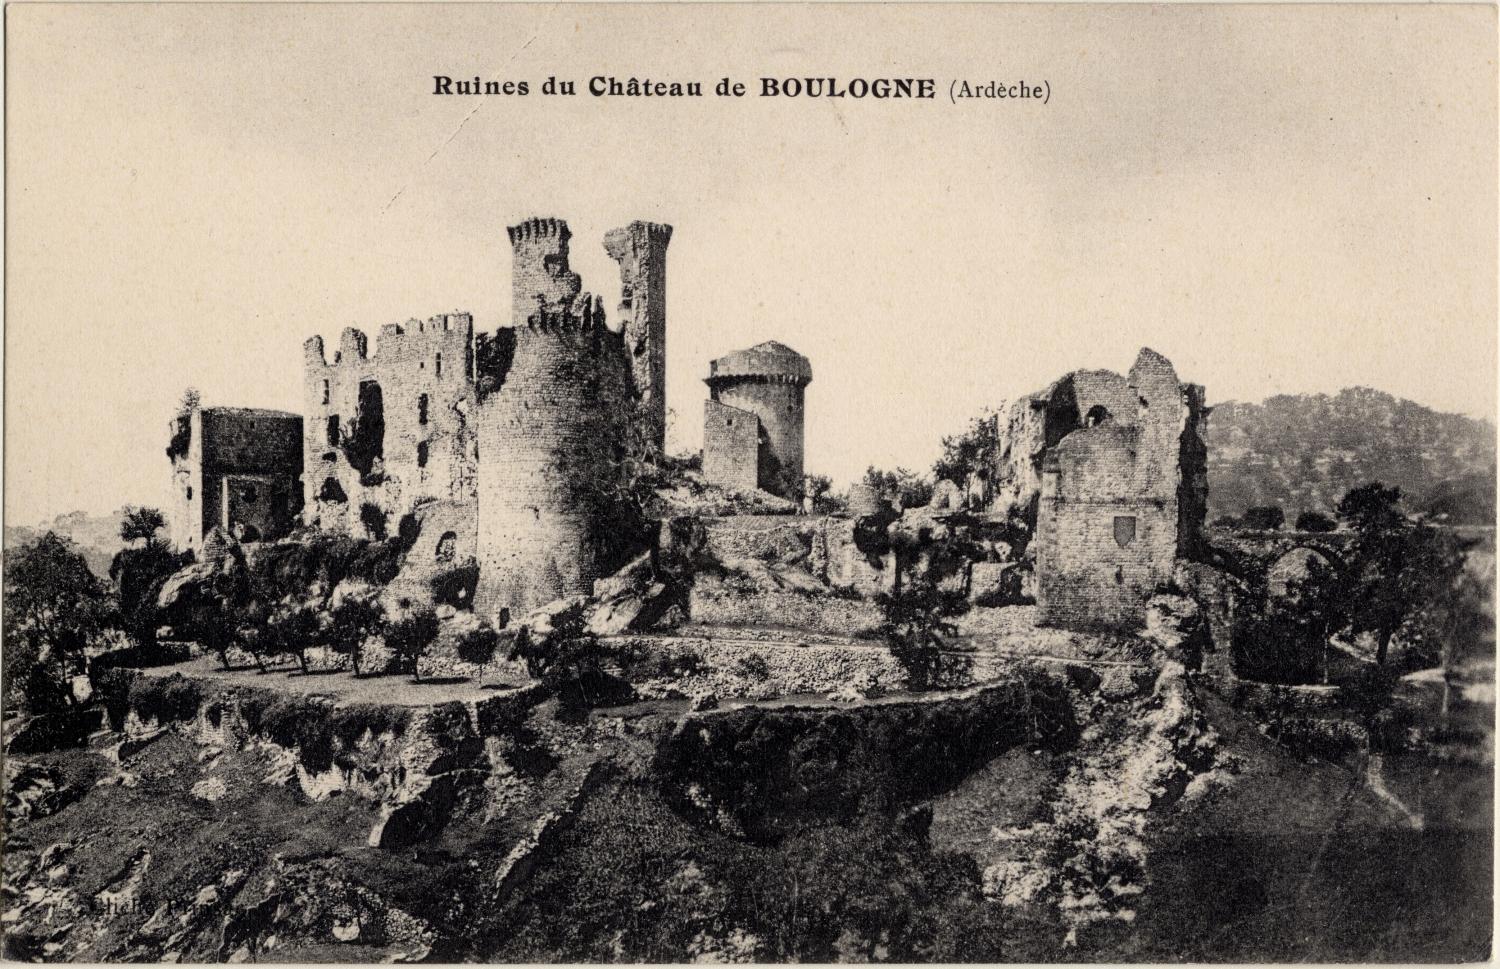 Ruines du Château de Boulogne (Ardèche)